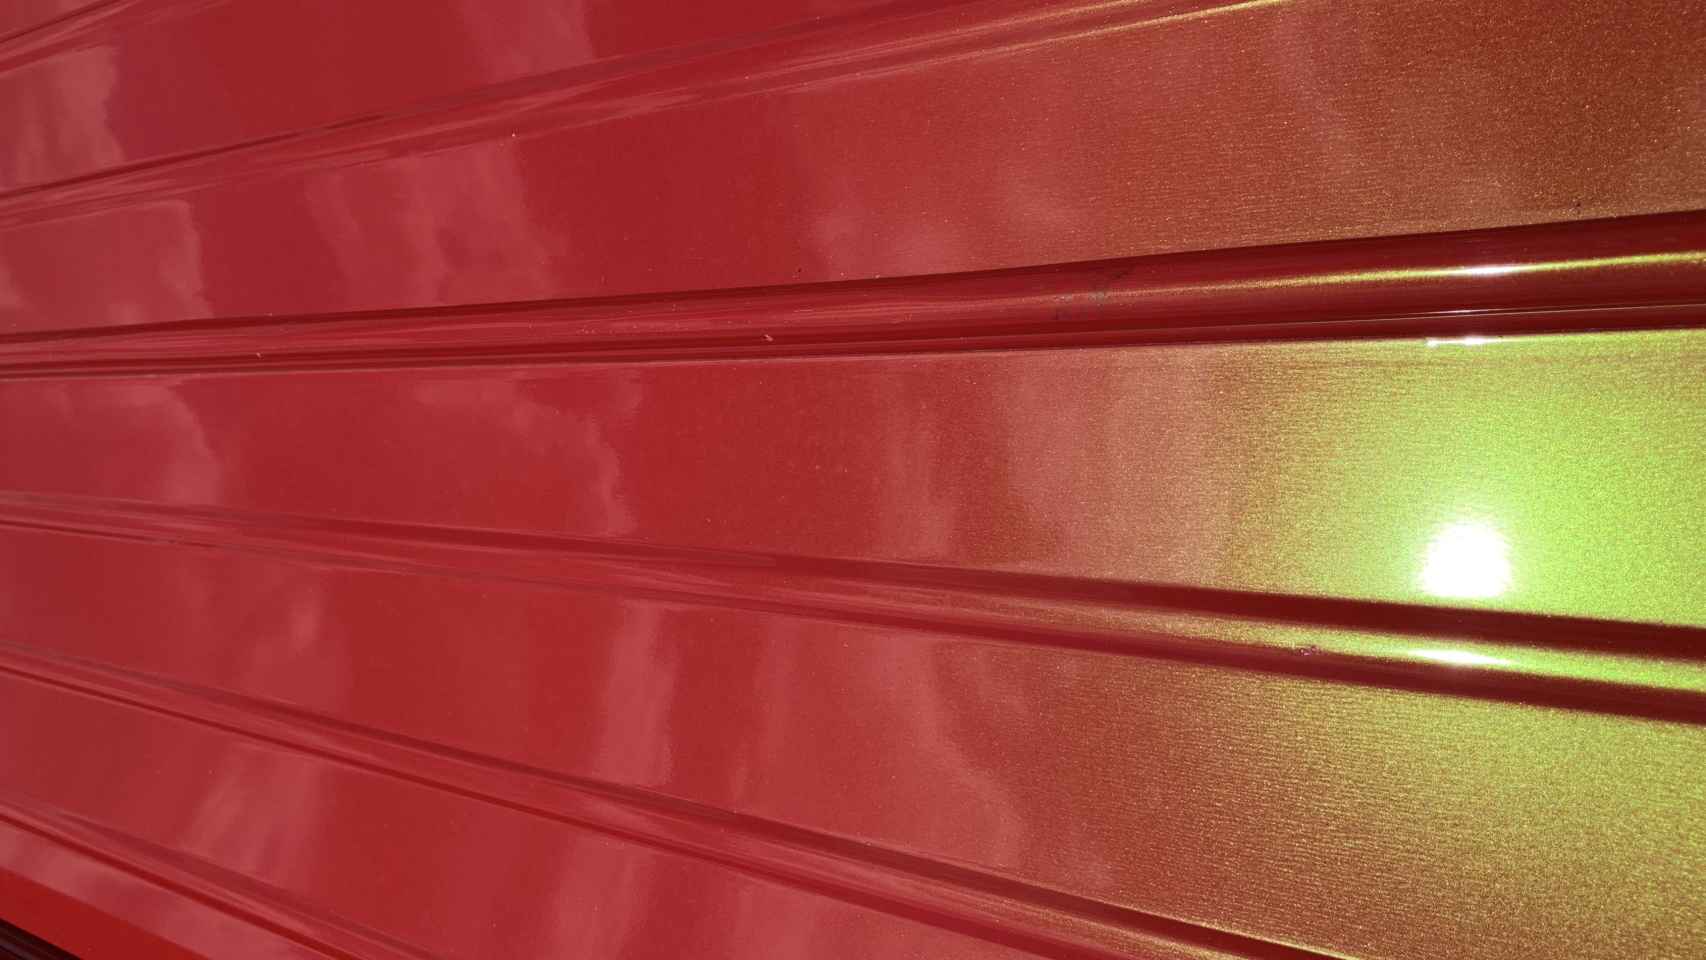 Pintura 'Boston Red', de color rojo con reflejos dorados. Foto: luis vidal + arquitectos